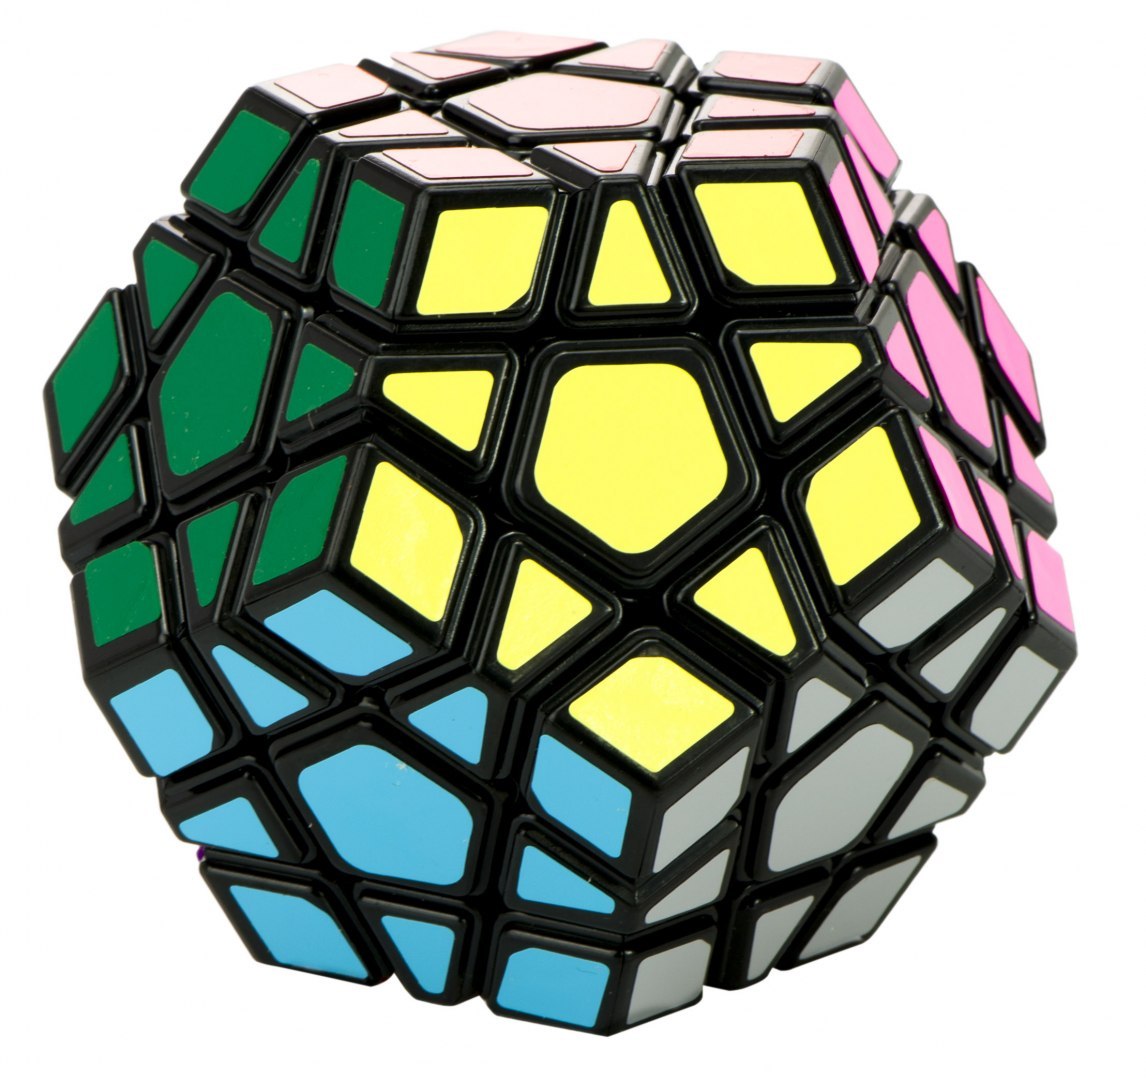 Układanka logiczna - dwunastościenna kostka Rubika